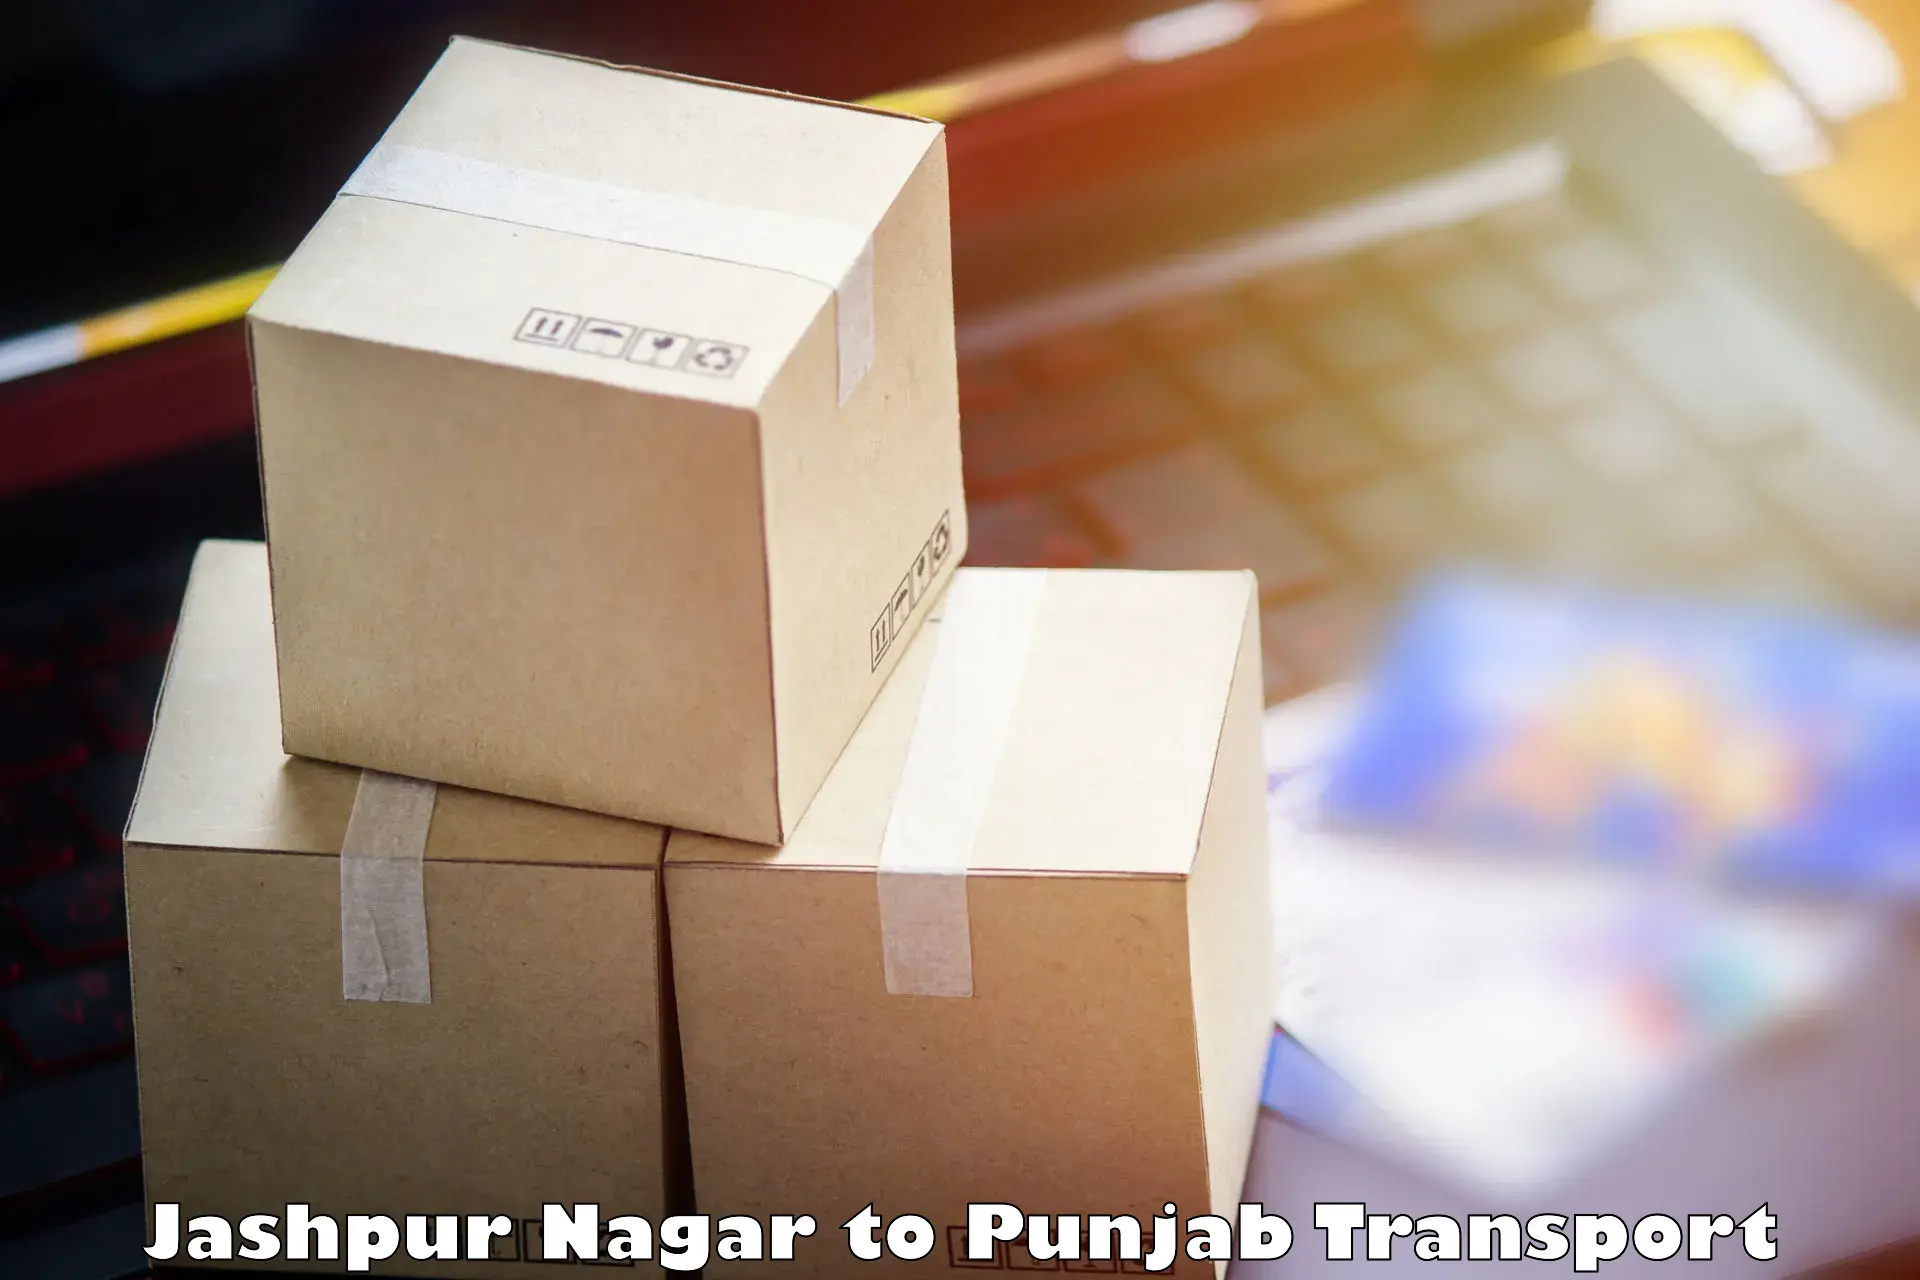 Transport shared services Jashpur Nagar to Goindwal Sahib